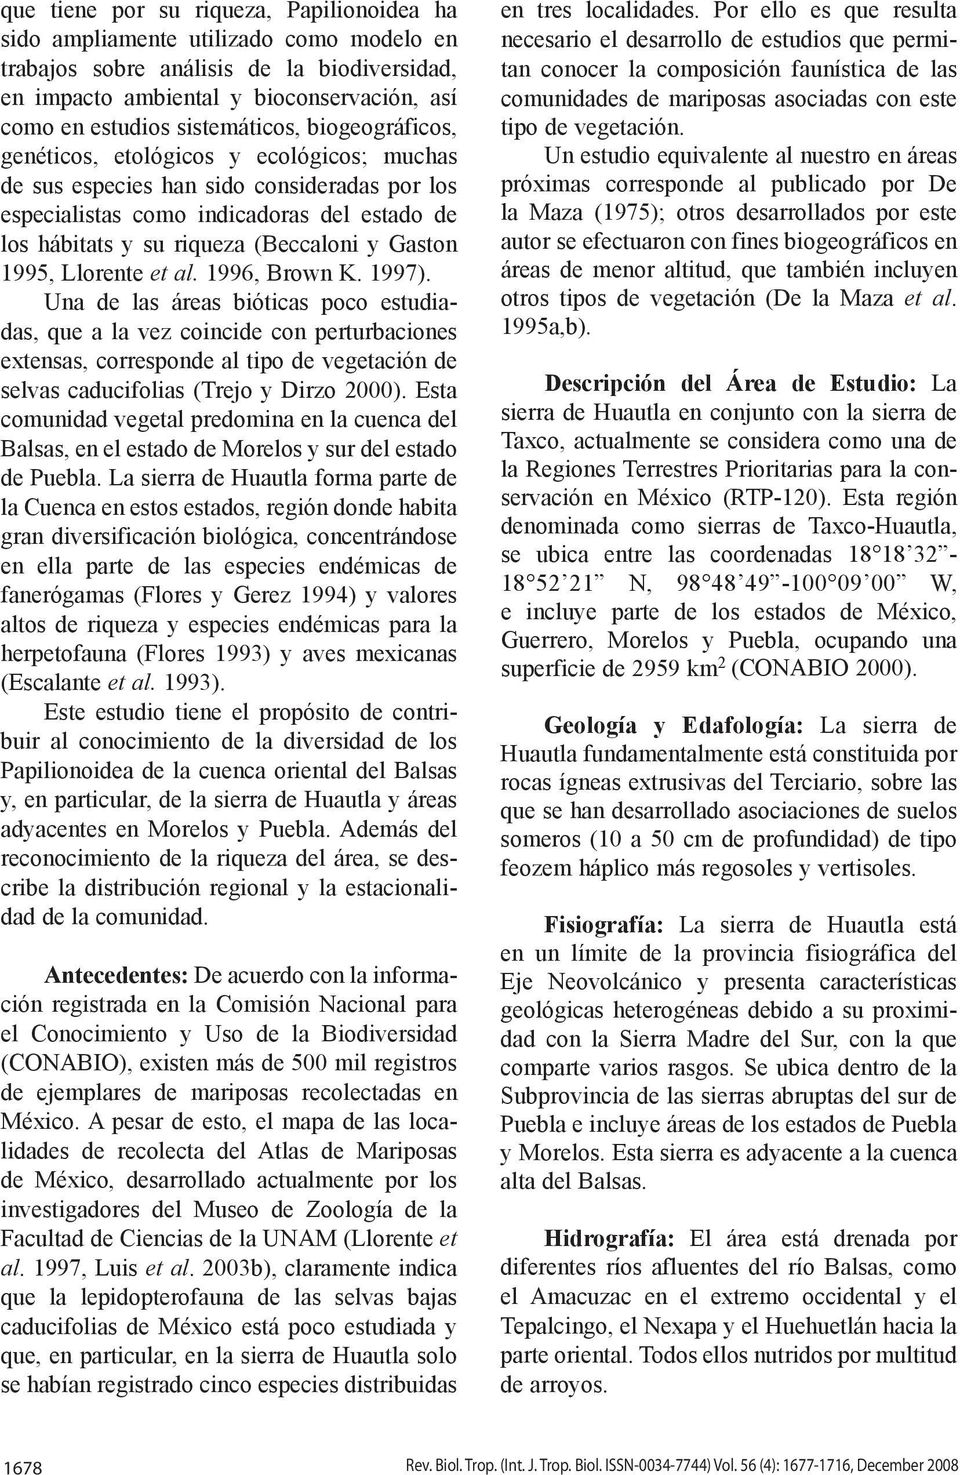 (Beccaloni y Gaston 1995, Llorente et al. 1996, Brown K. 1997).